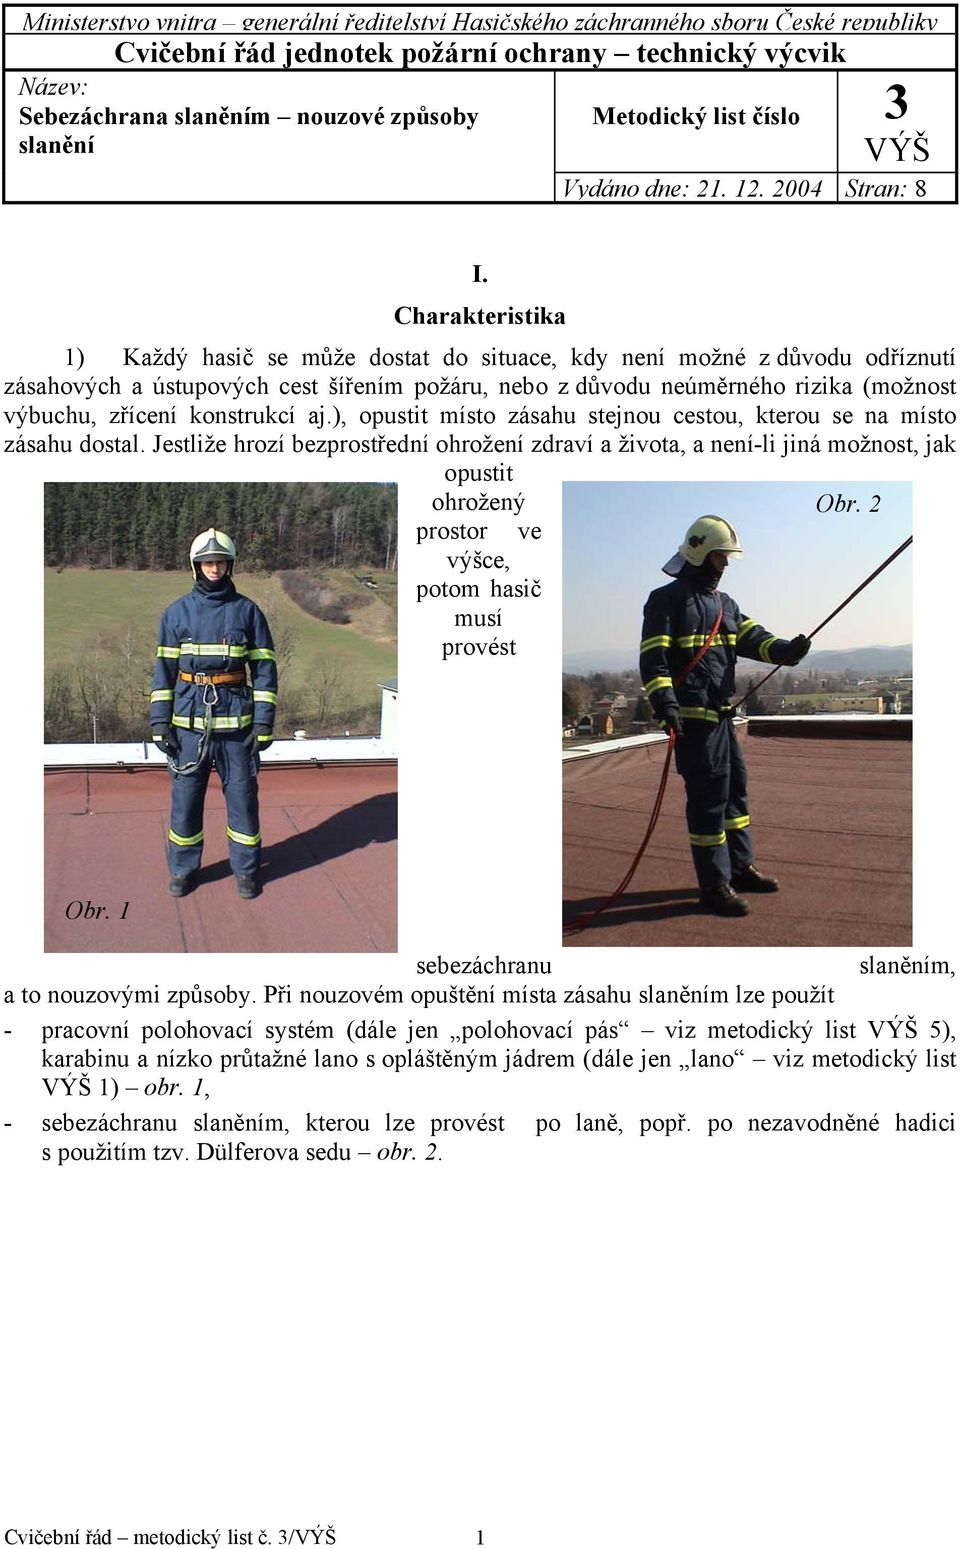 Charakteristika 1) Každý hasič se může dostat do situace, kdy není možné z důvodu odříznutí zásahových a ústupových cest šířením požáru, nebo z důvodu neúměrného rizika (možnost výbuchu, zřícení